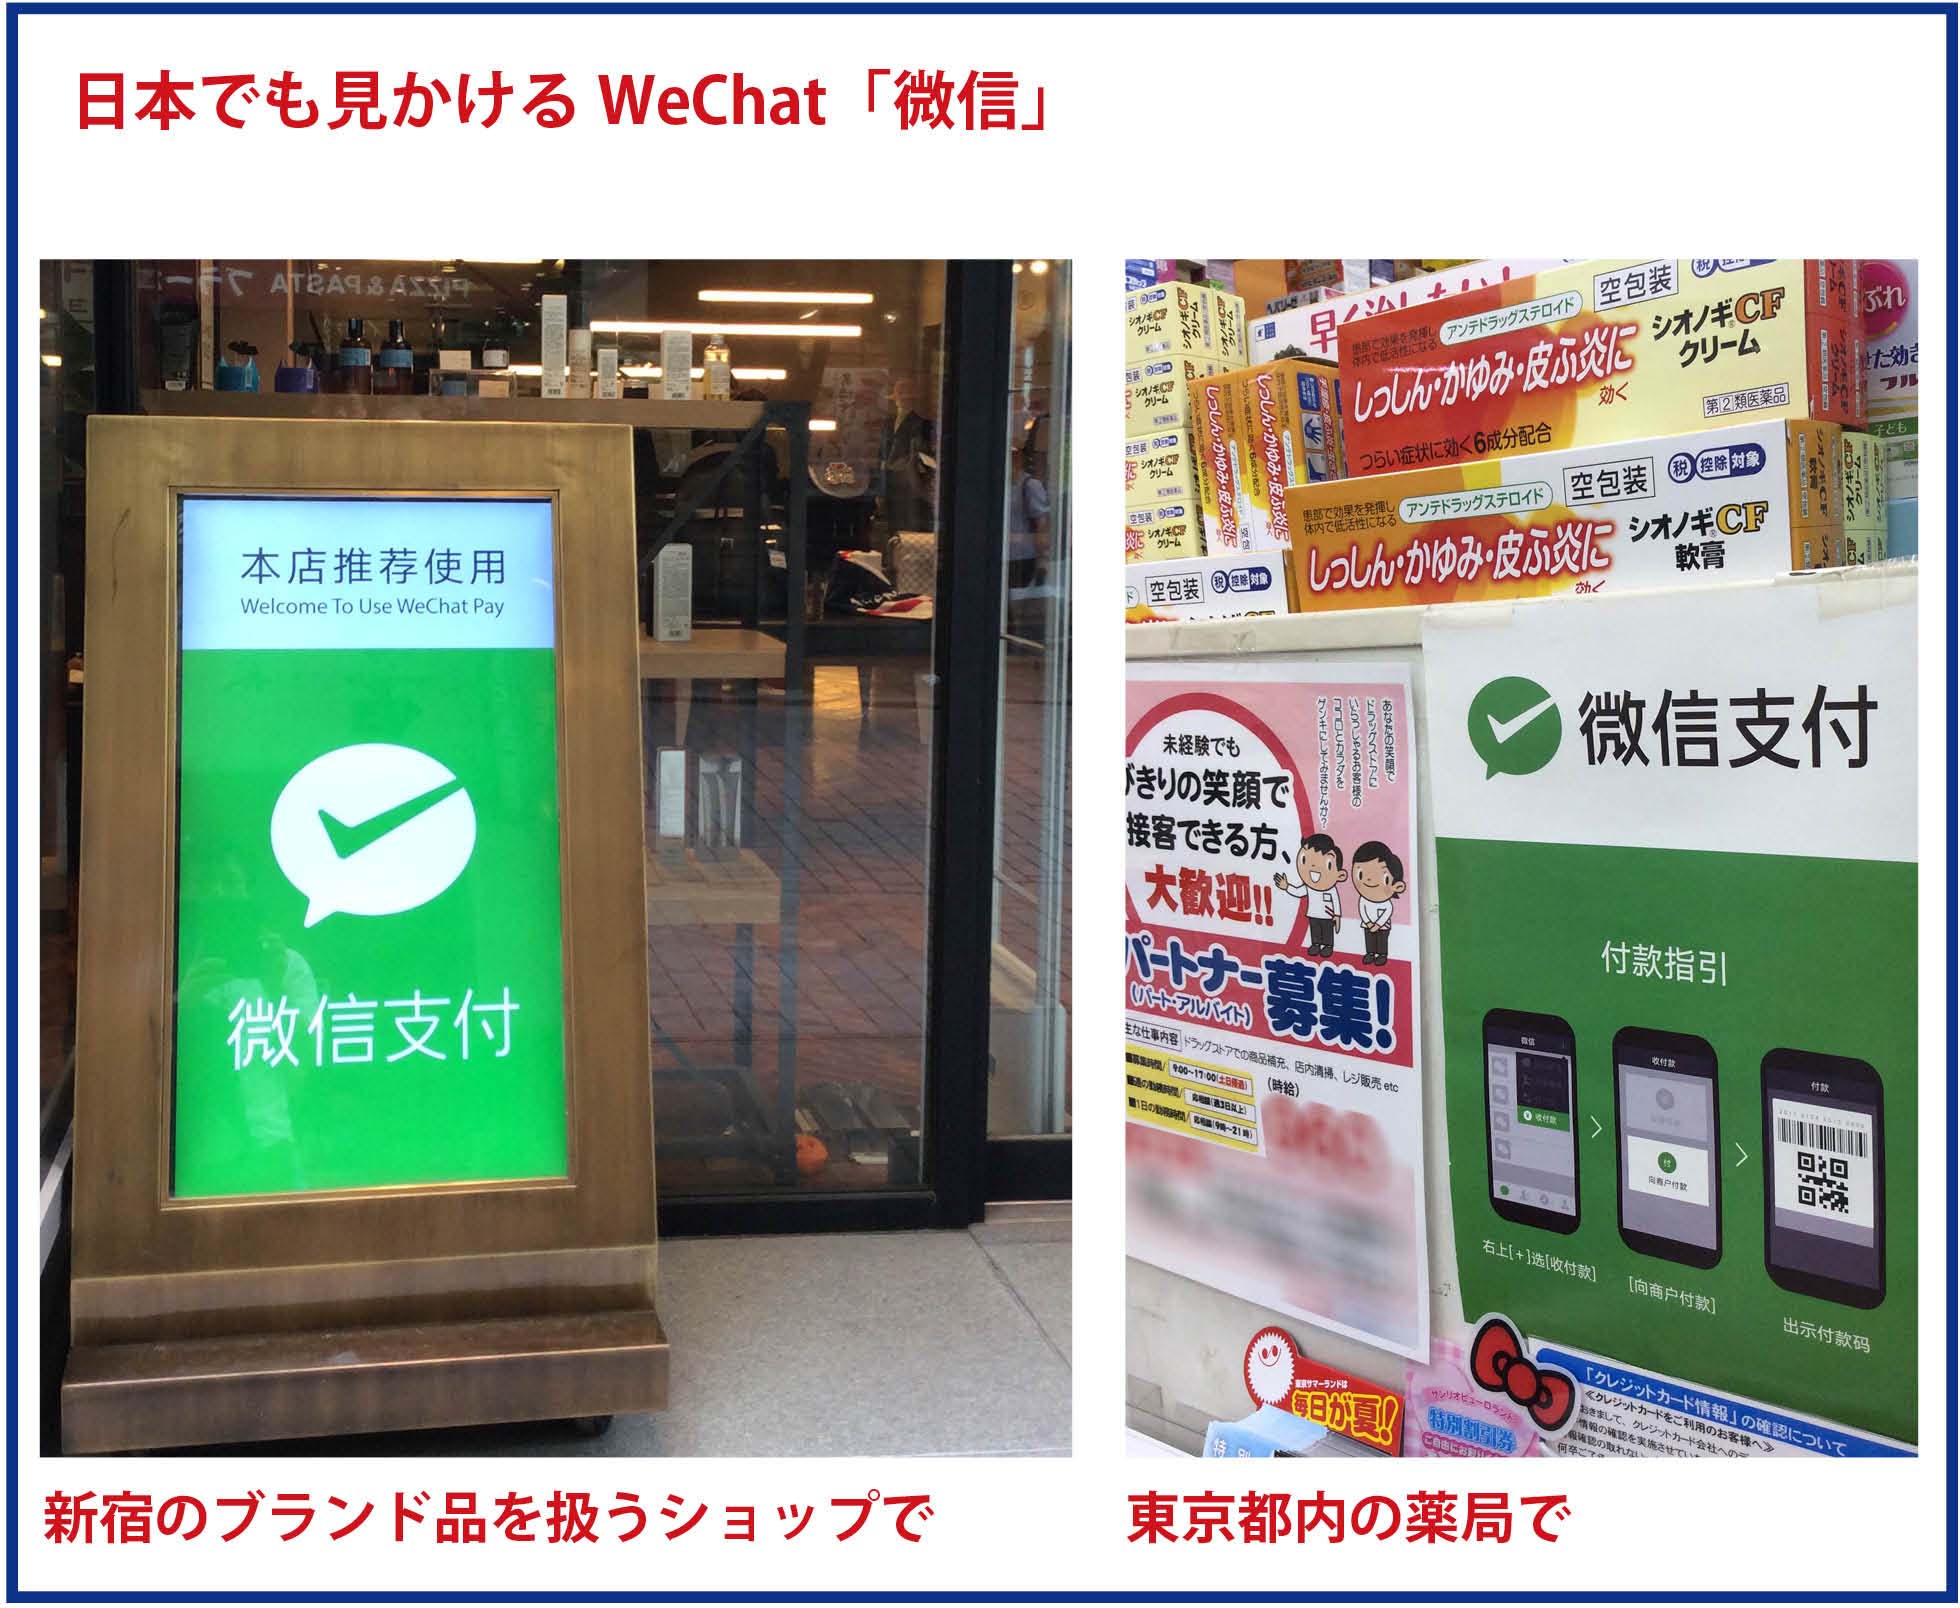 中国版line Wechatがいろいろとスゴい Yubisashi 旅の指さし会話帳